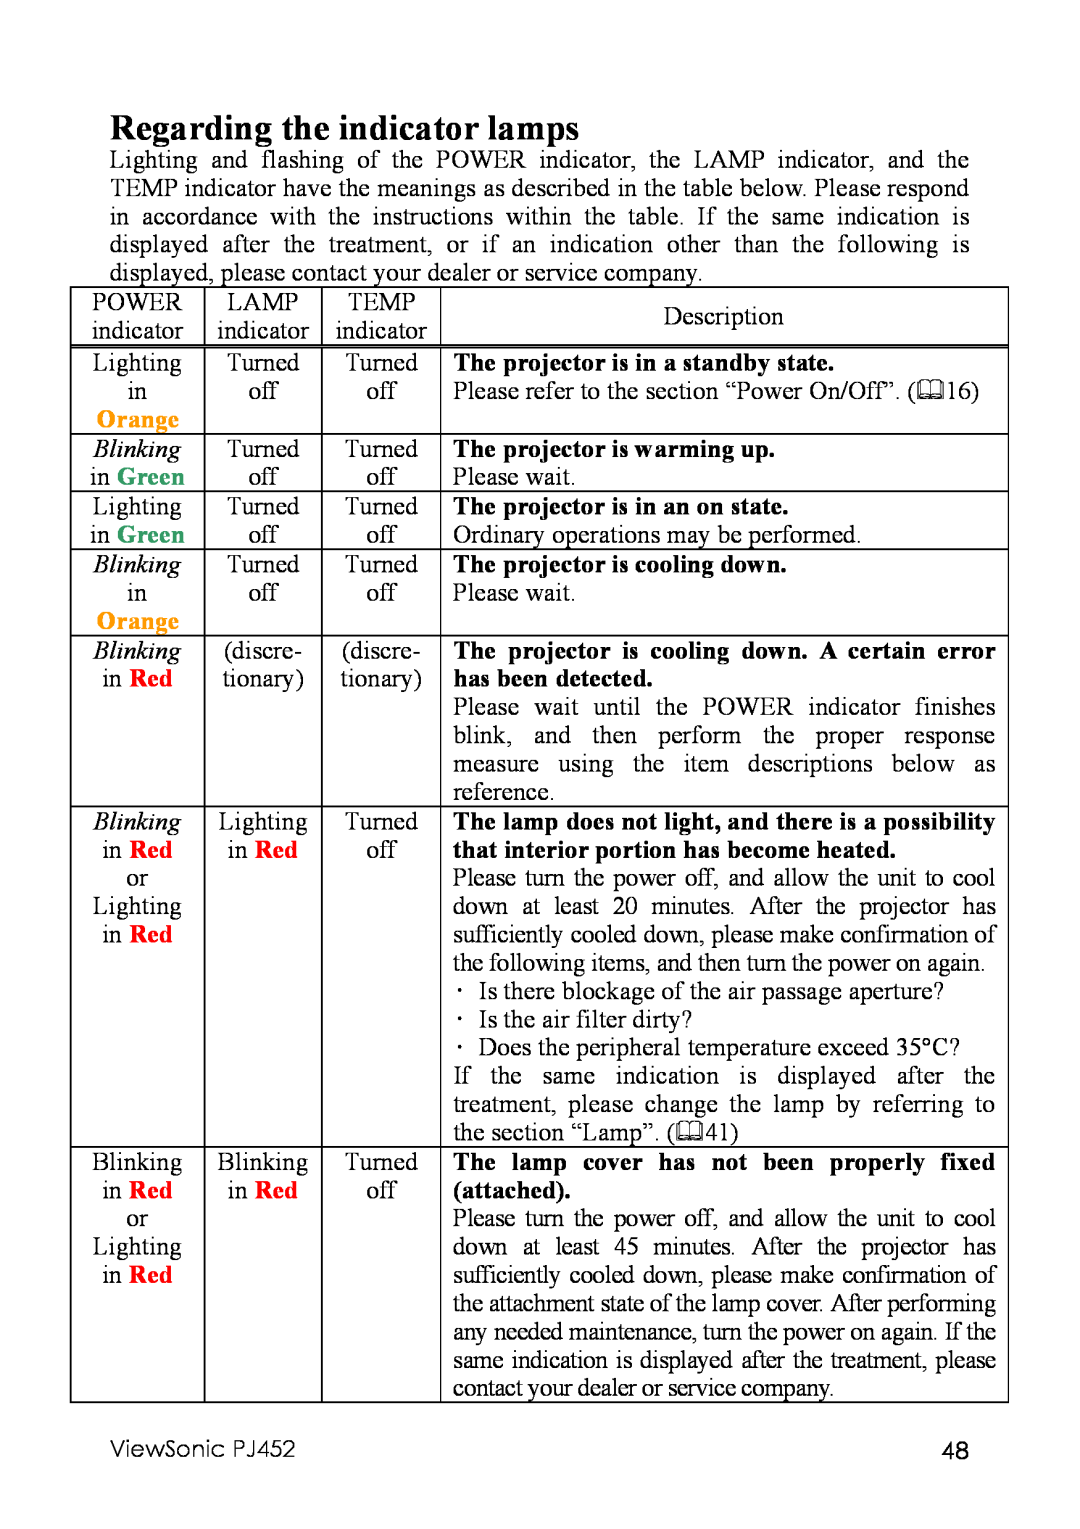 ViewSonic PJ452 manual Regarding the indicator lamps, in Green, Orange 